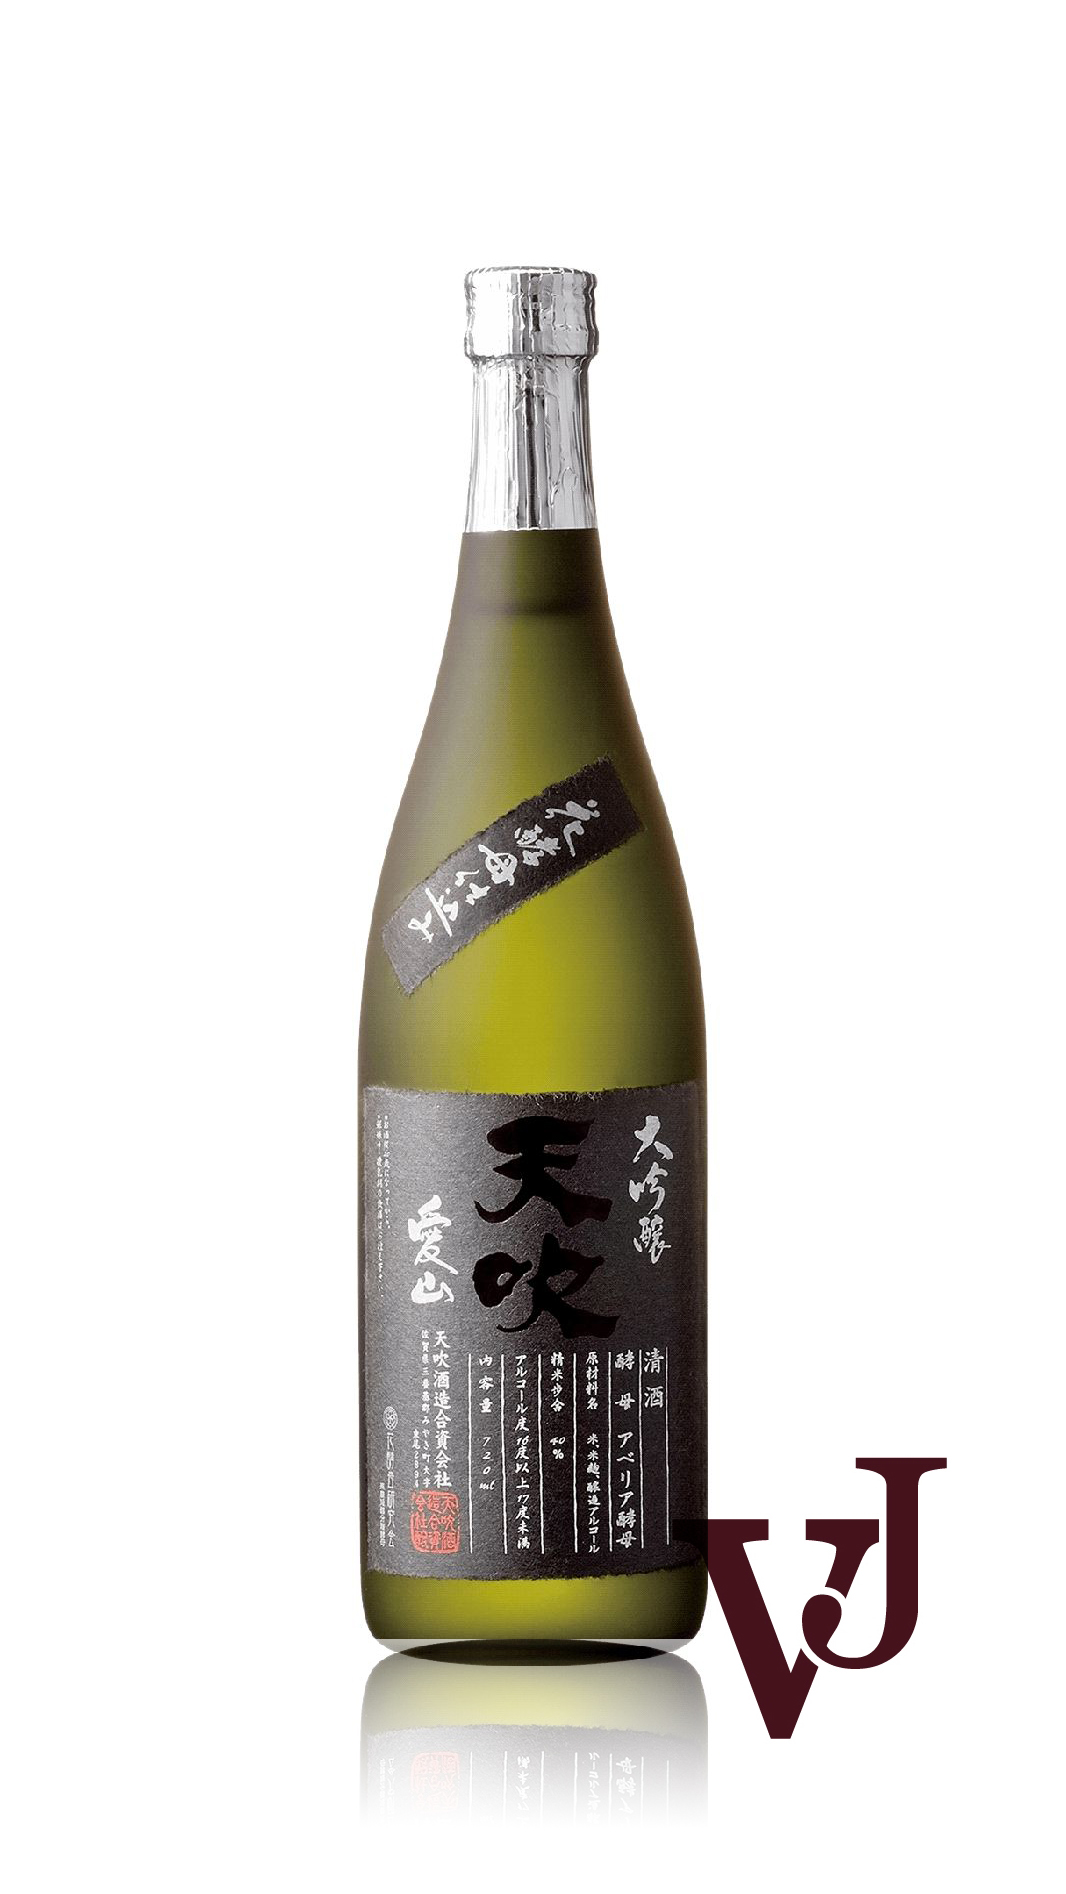 Övrigt vin - Amabuki Daiginjo Aiyama artikel nummer 8312901 från producenten Amabuki Sake Brewery från området Japan - Vinjournalen.se